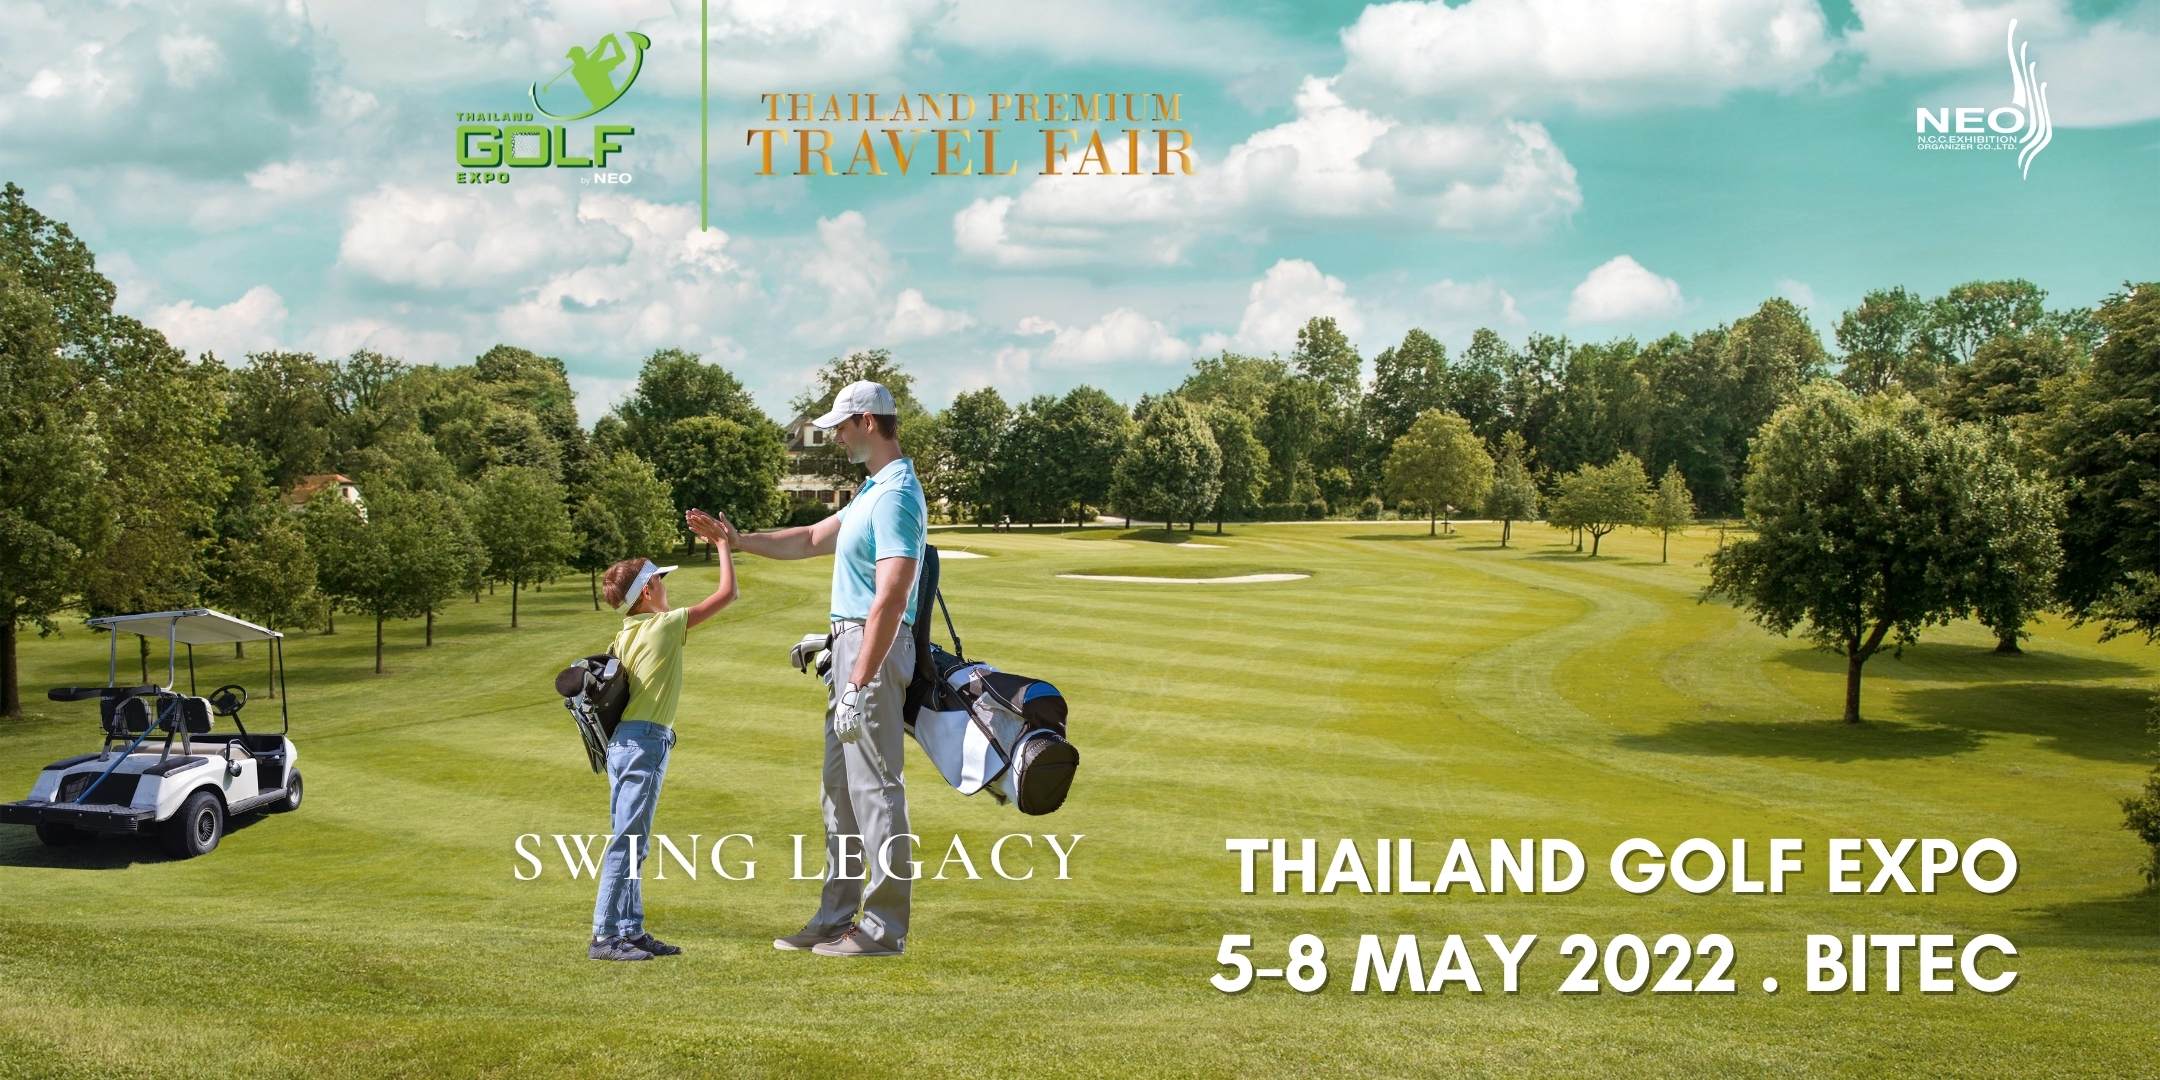 Thailand Golf Expo, Bangkok, Thailand